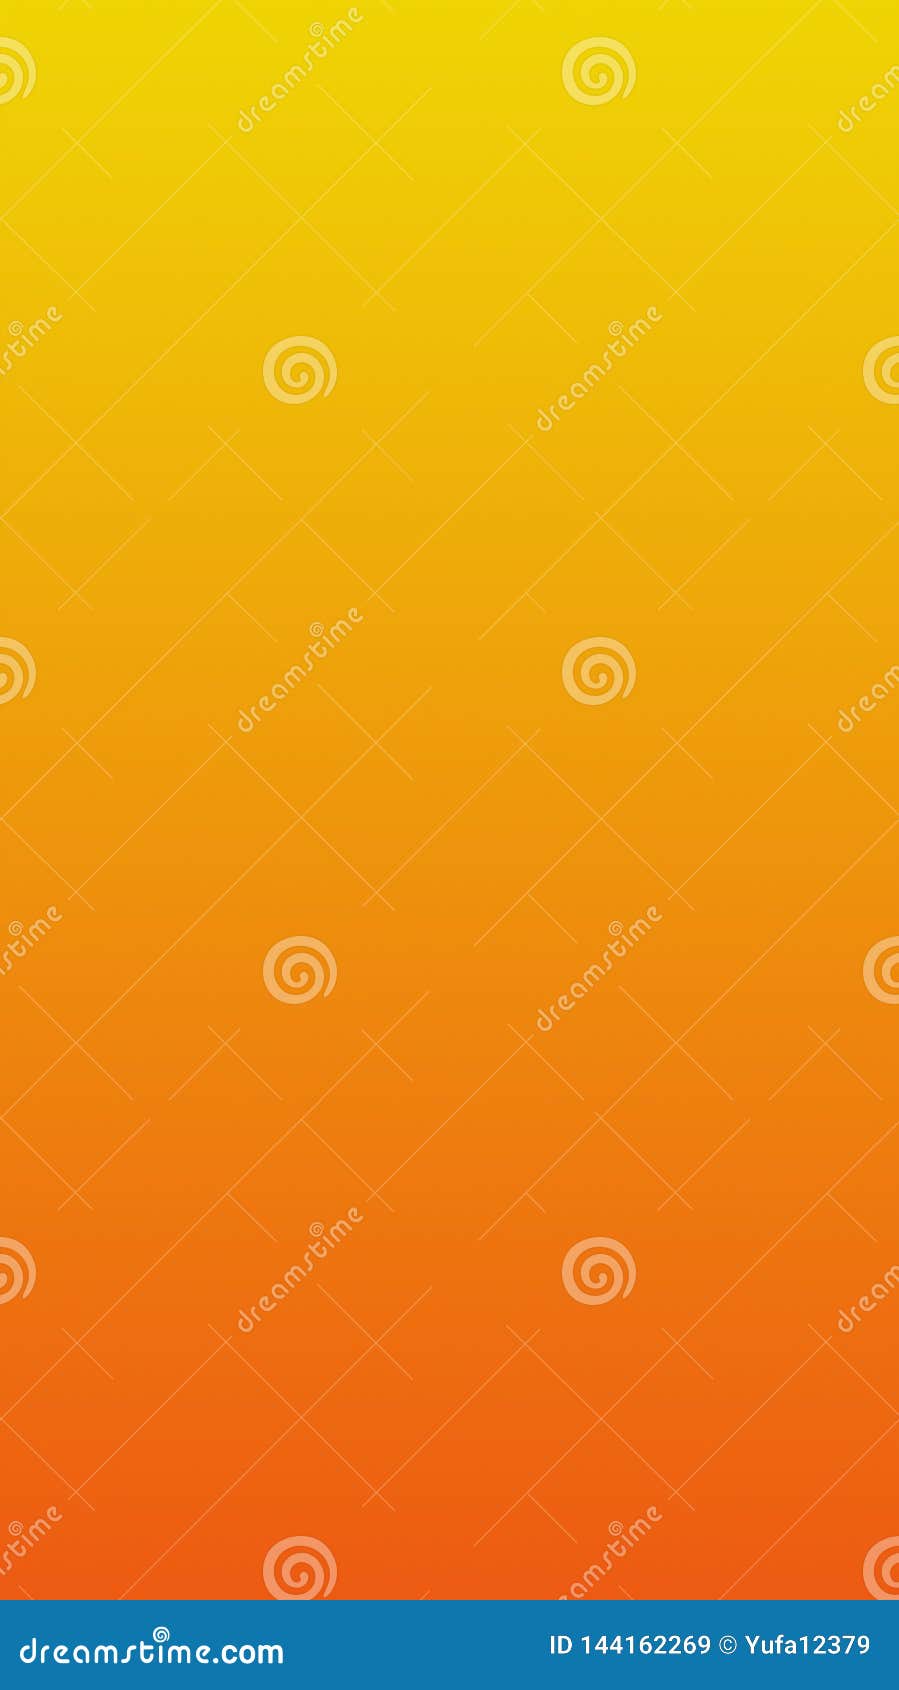 Thiết kế màn hình ứng dụng di động màu cam - màu vàng: Những màu sắc mềm mại trong thiết kế! Với thiết kế màn hình cam vàng cho ứng dụng di động, bạn sẽ mang đến một trải nghiệm trực quan, dễ sử dụng và đầy tinh tế cho người dùng. Màu sắc mềm mại và hài hòa sẽ giúp cho ứng dụng của bạn nổi bật trong số những ứng dụng tương tự.